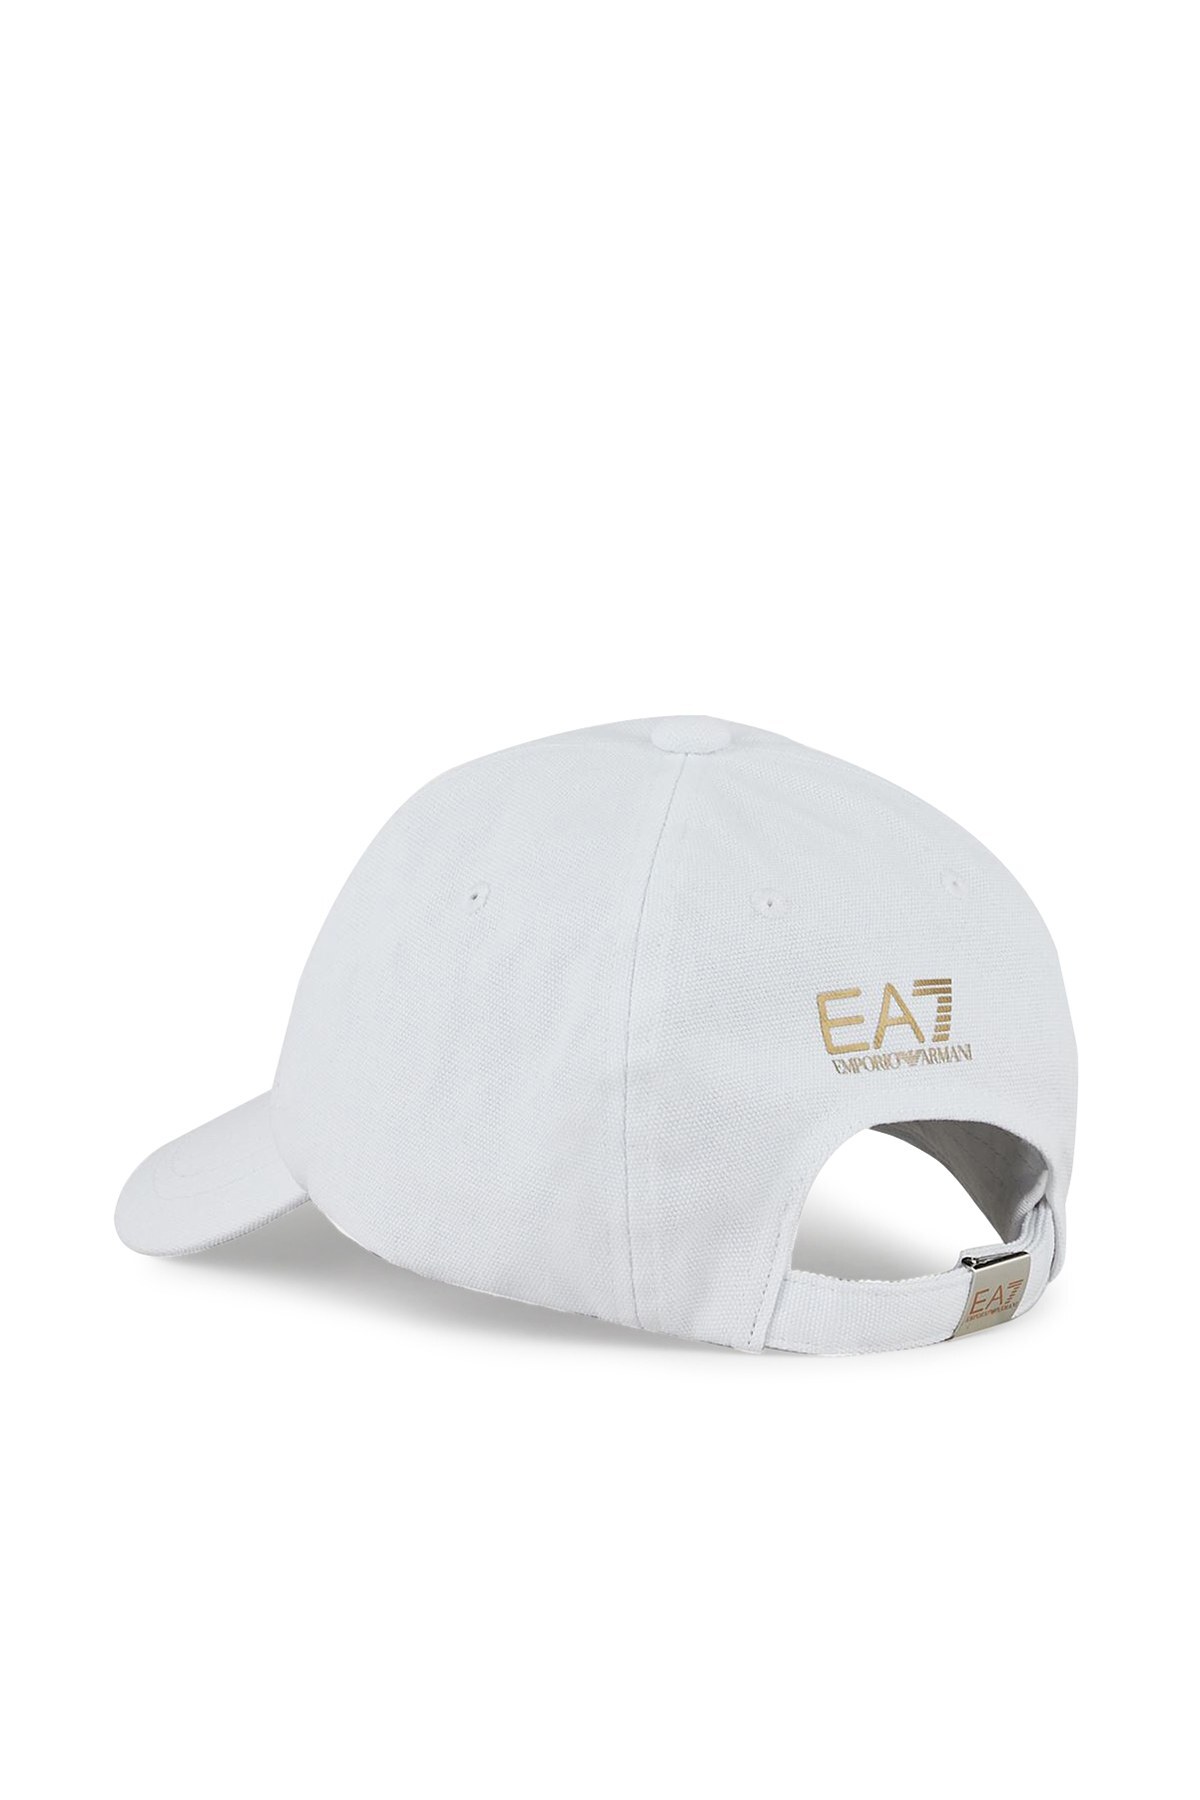 EA7 Marka Logolu % 100 Pamuk Kadın Şapka 285559 1P101 00010 BEYAZ